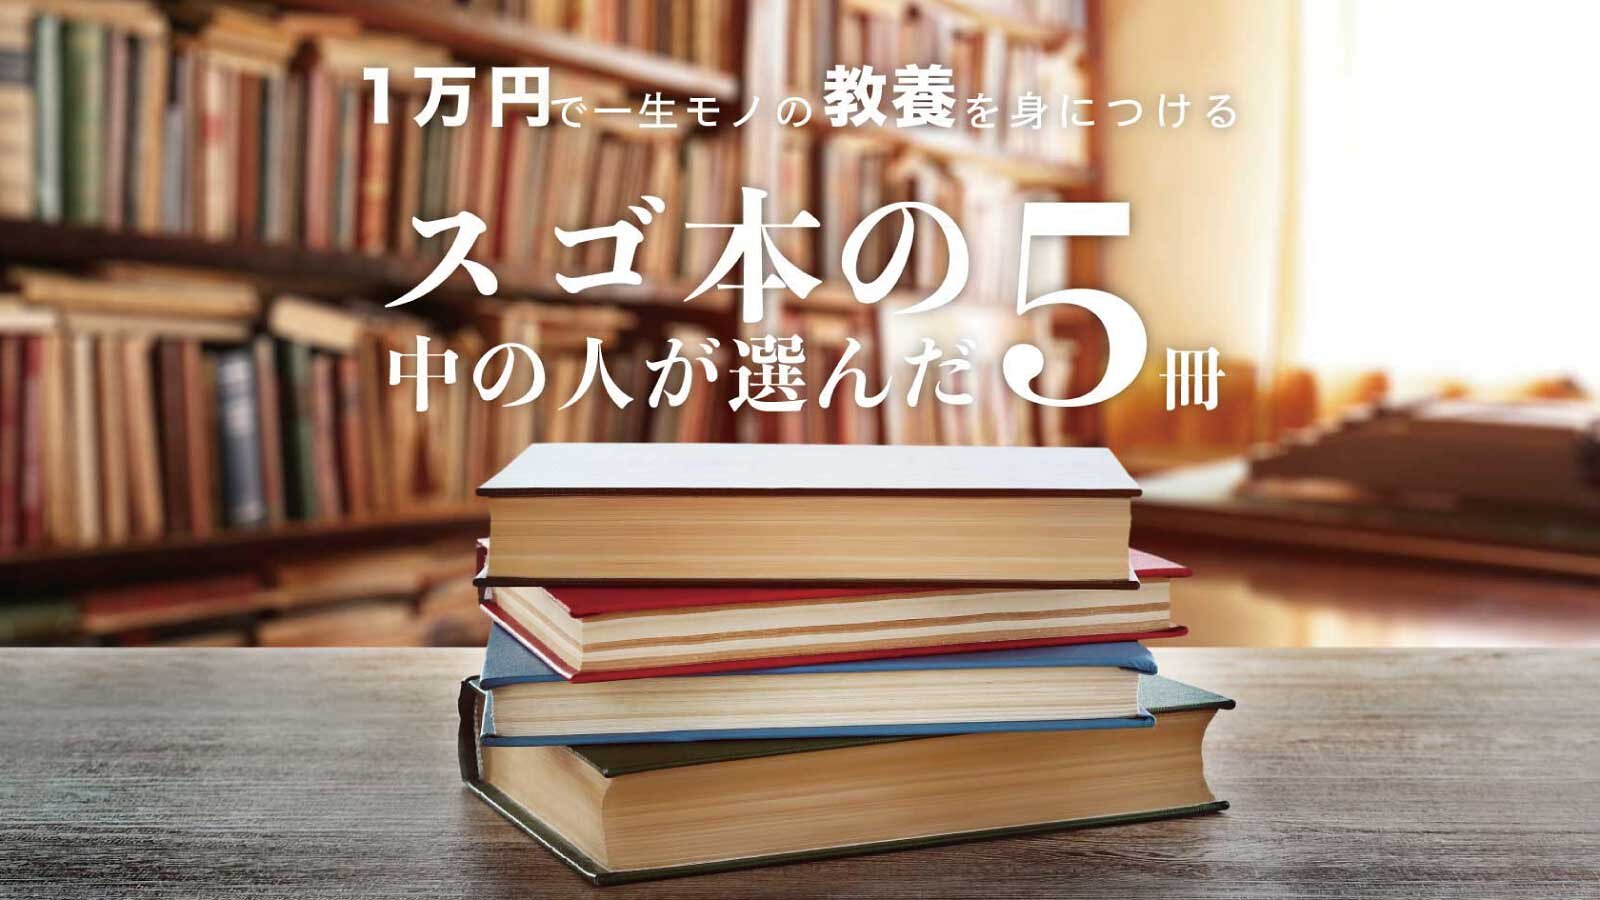 スゴ本の中の人が選んだ、1万円で“一生モノの教養”を身につけるための5冊